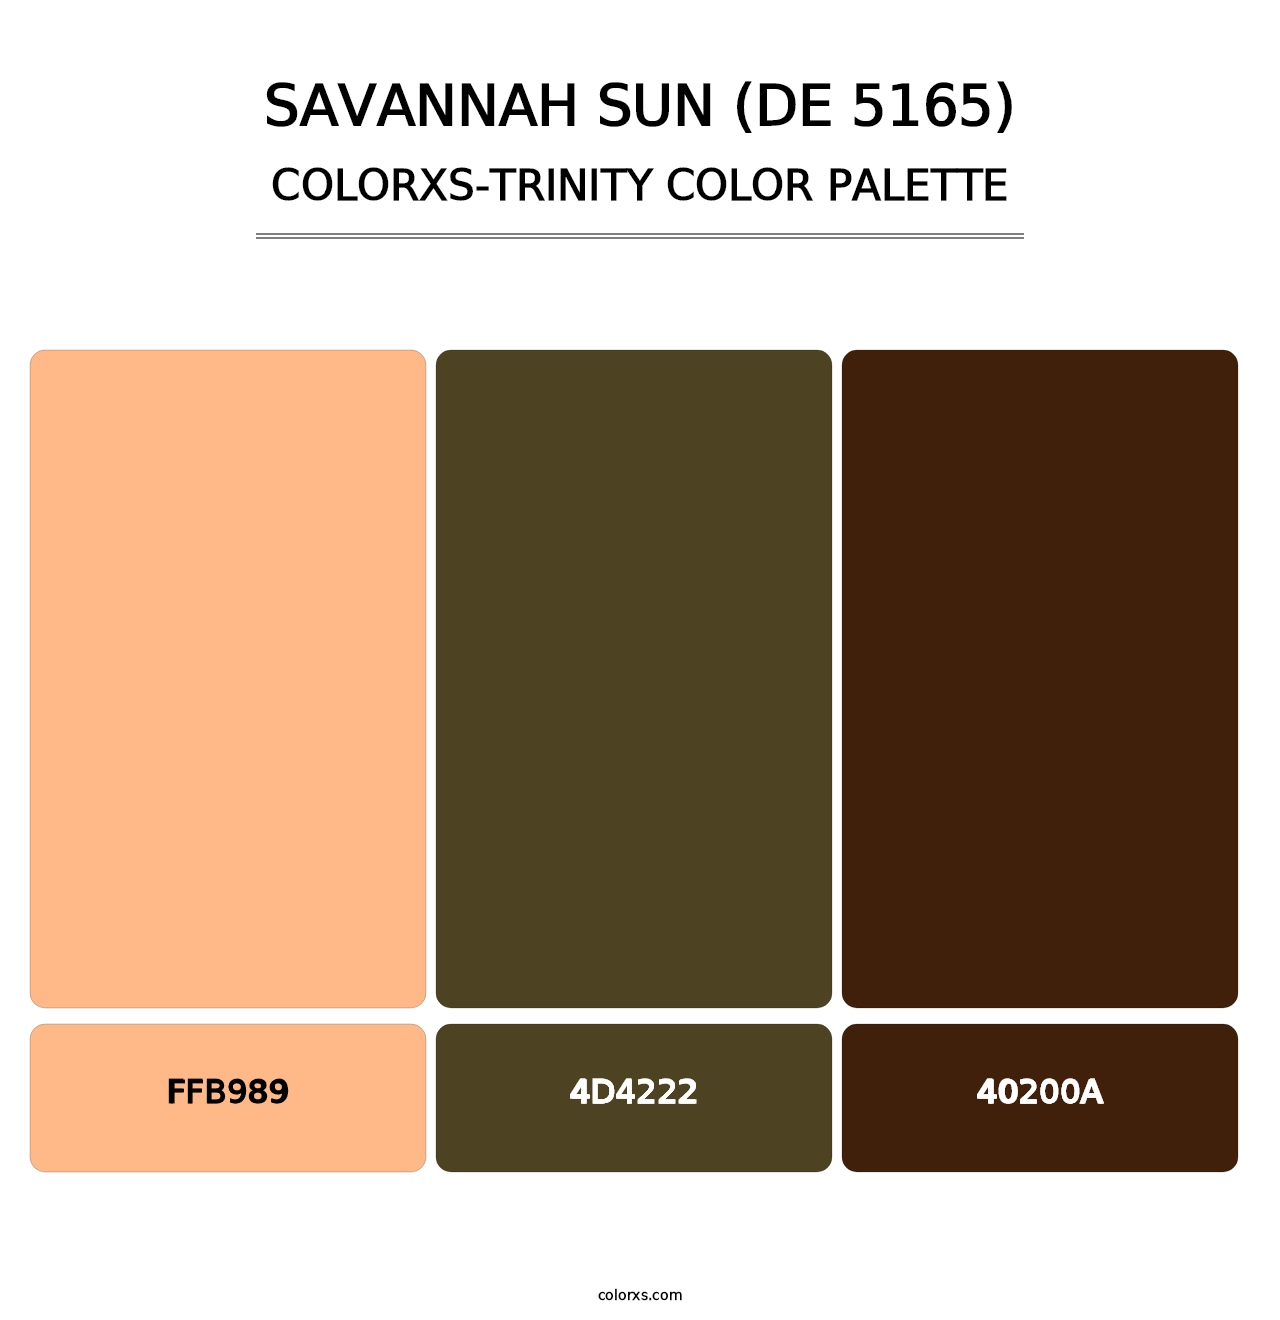 Savannah Sun (DE 5165) - Colorxs Trinity Palette